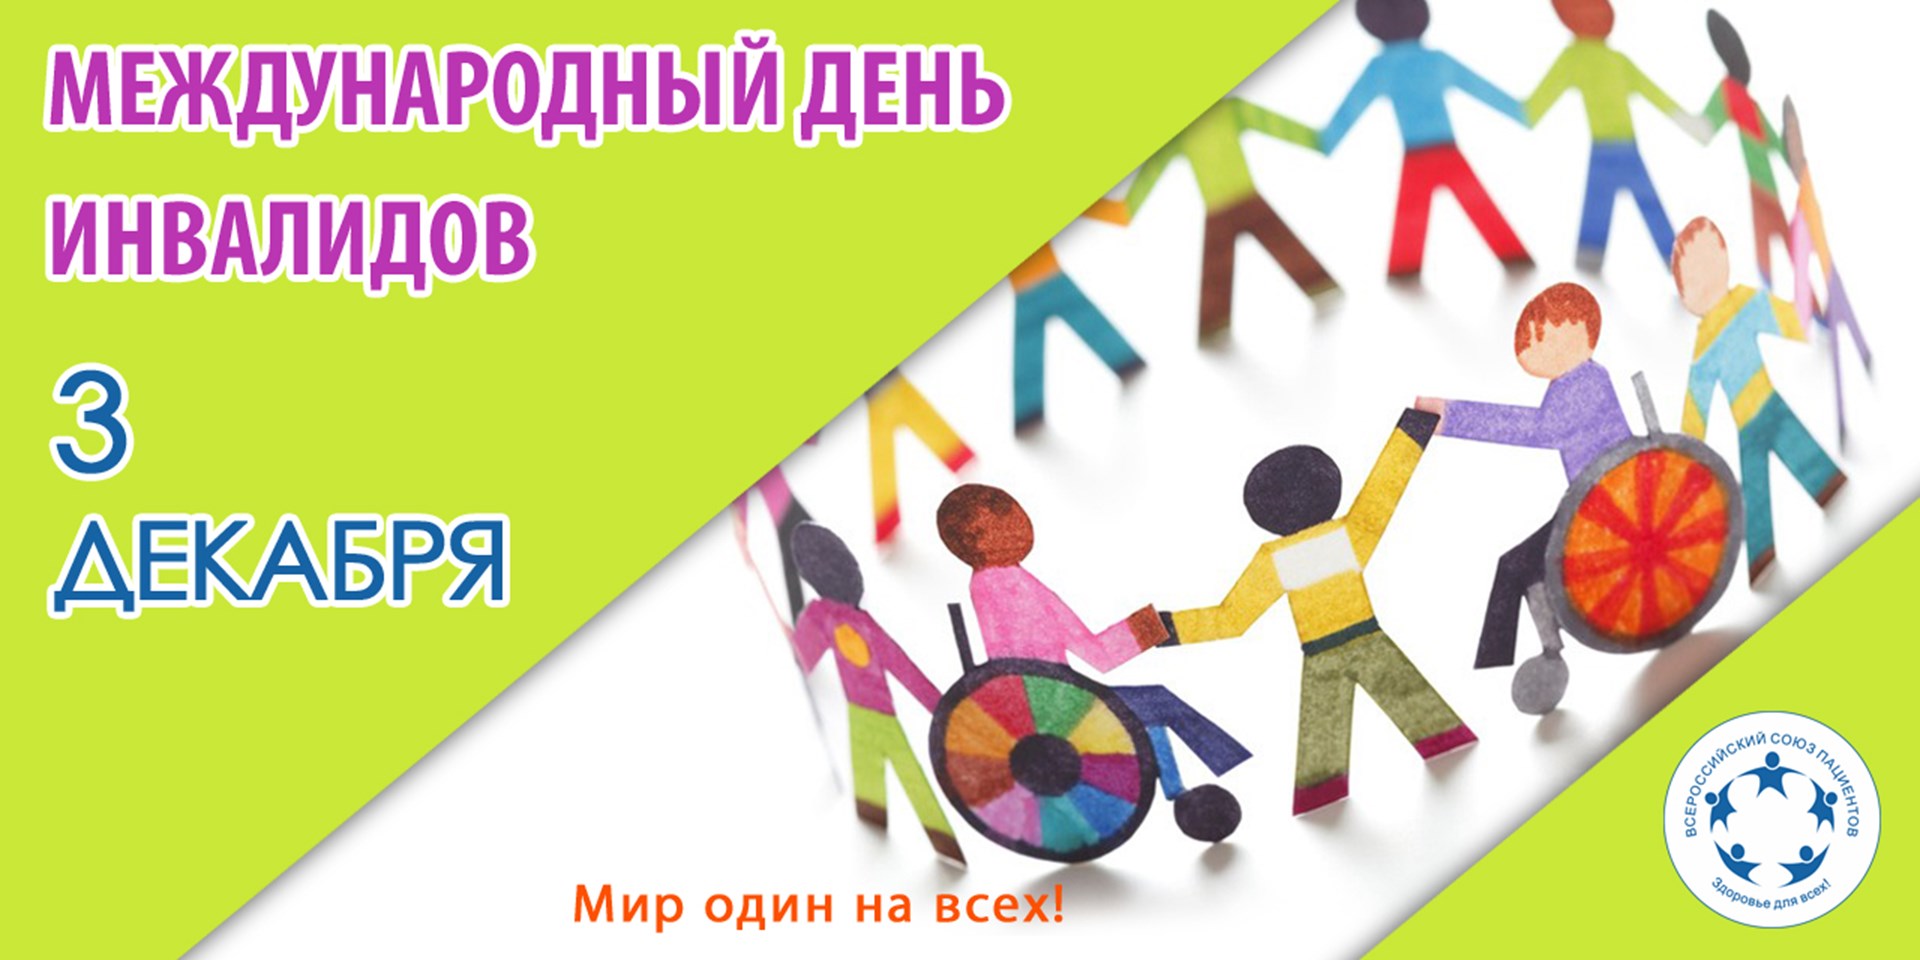 03.12.2020 3 декабря отмечается Международный день инвалидов